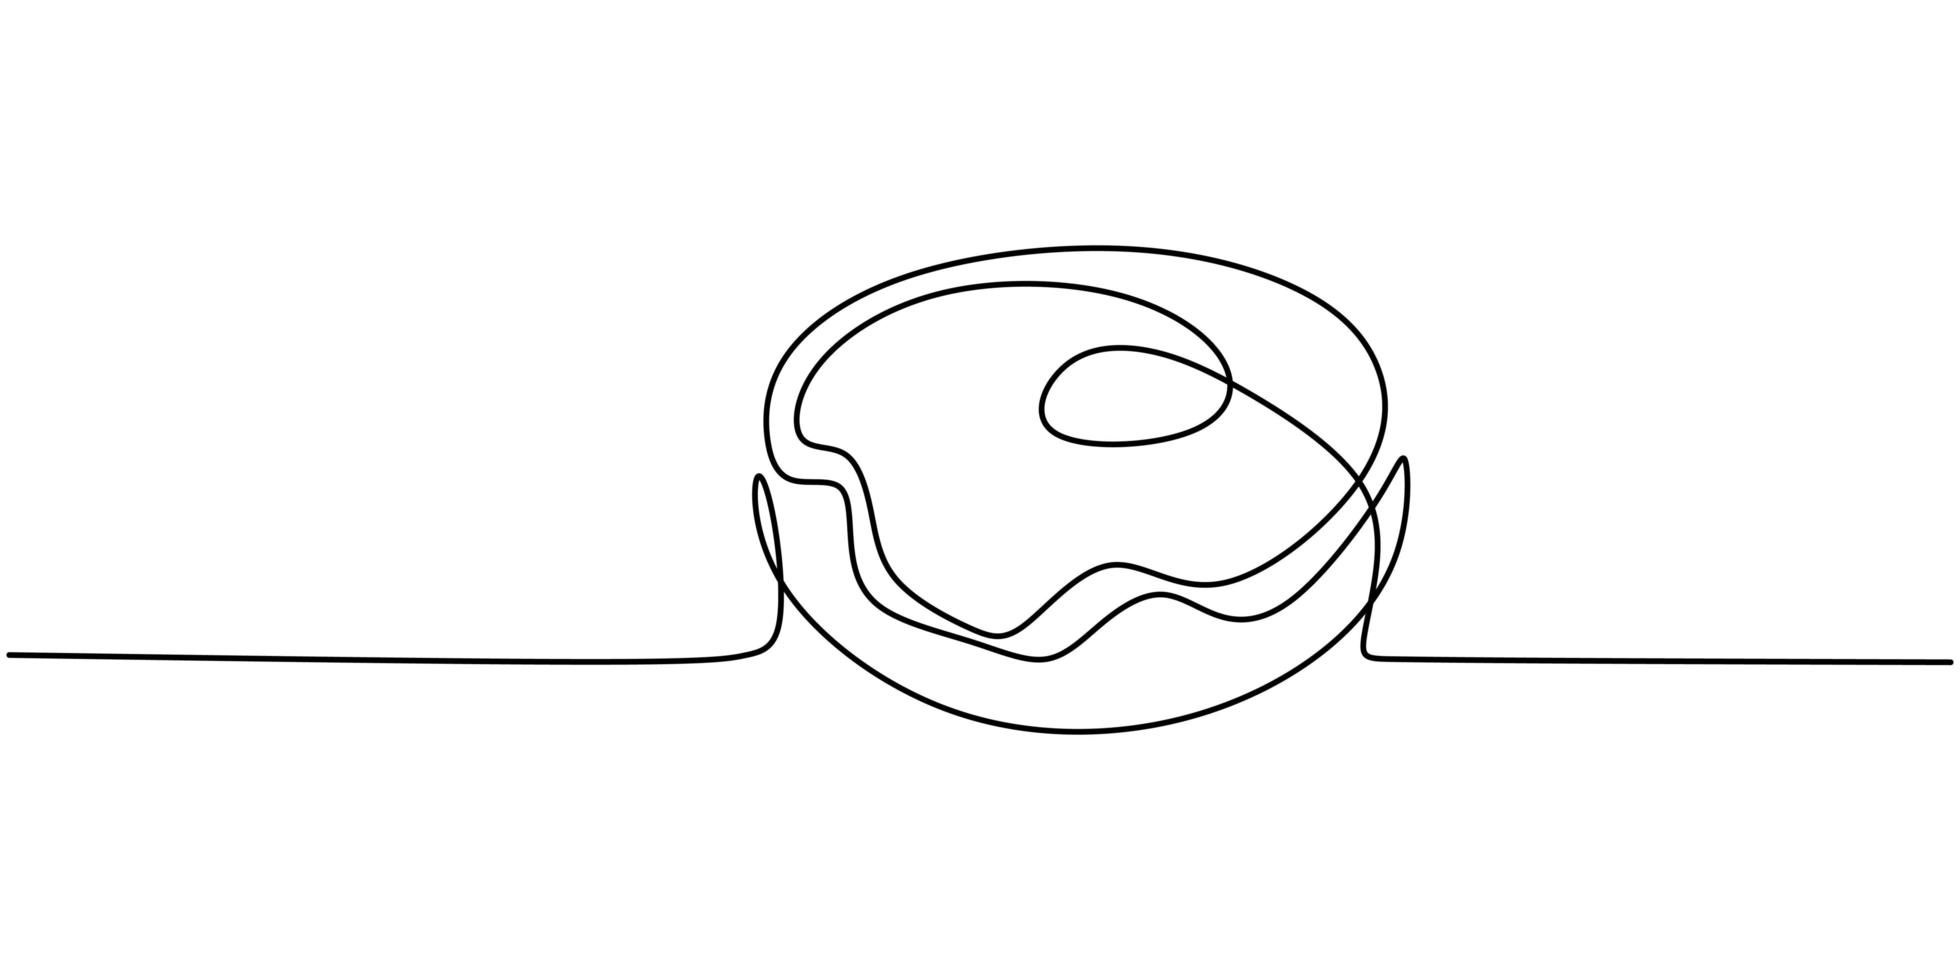 ciambella continua un disegno a tratteggio per ristorante. fresco dolce delizioso americano ciambelle ristorante logo emblema. vettore